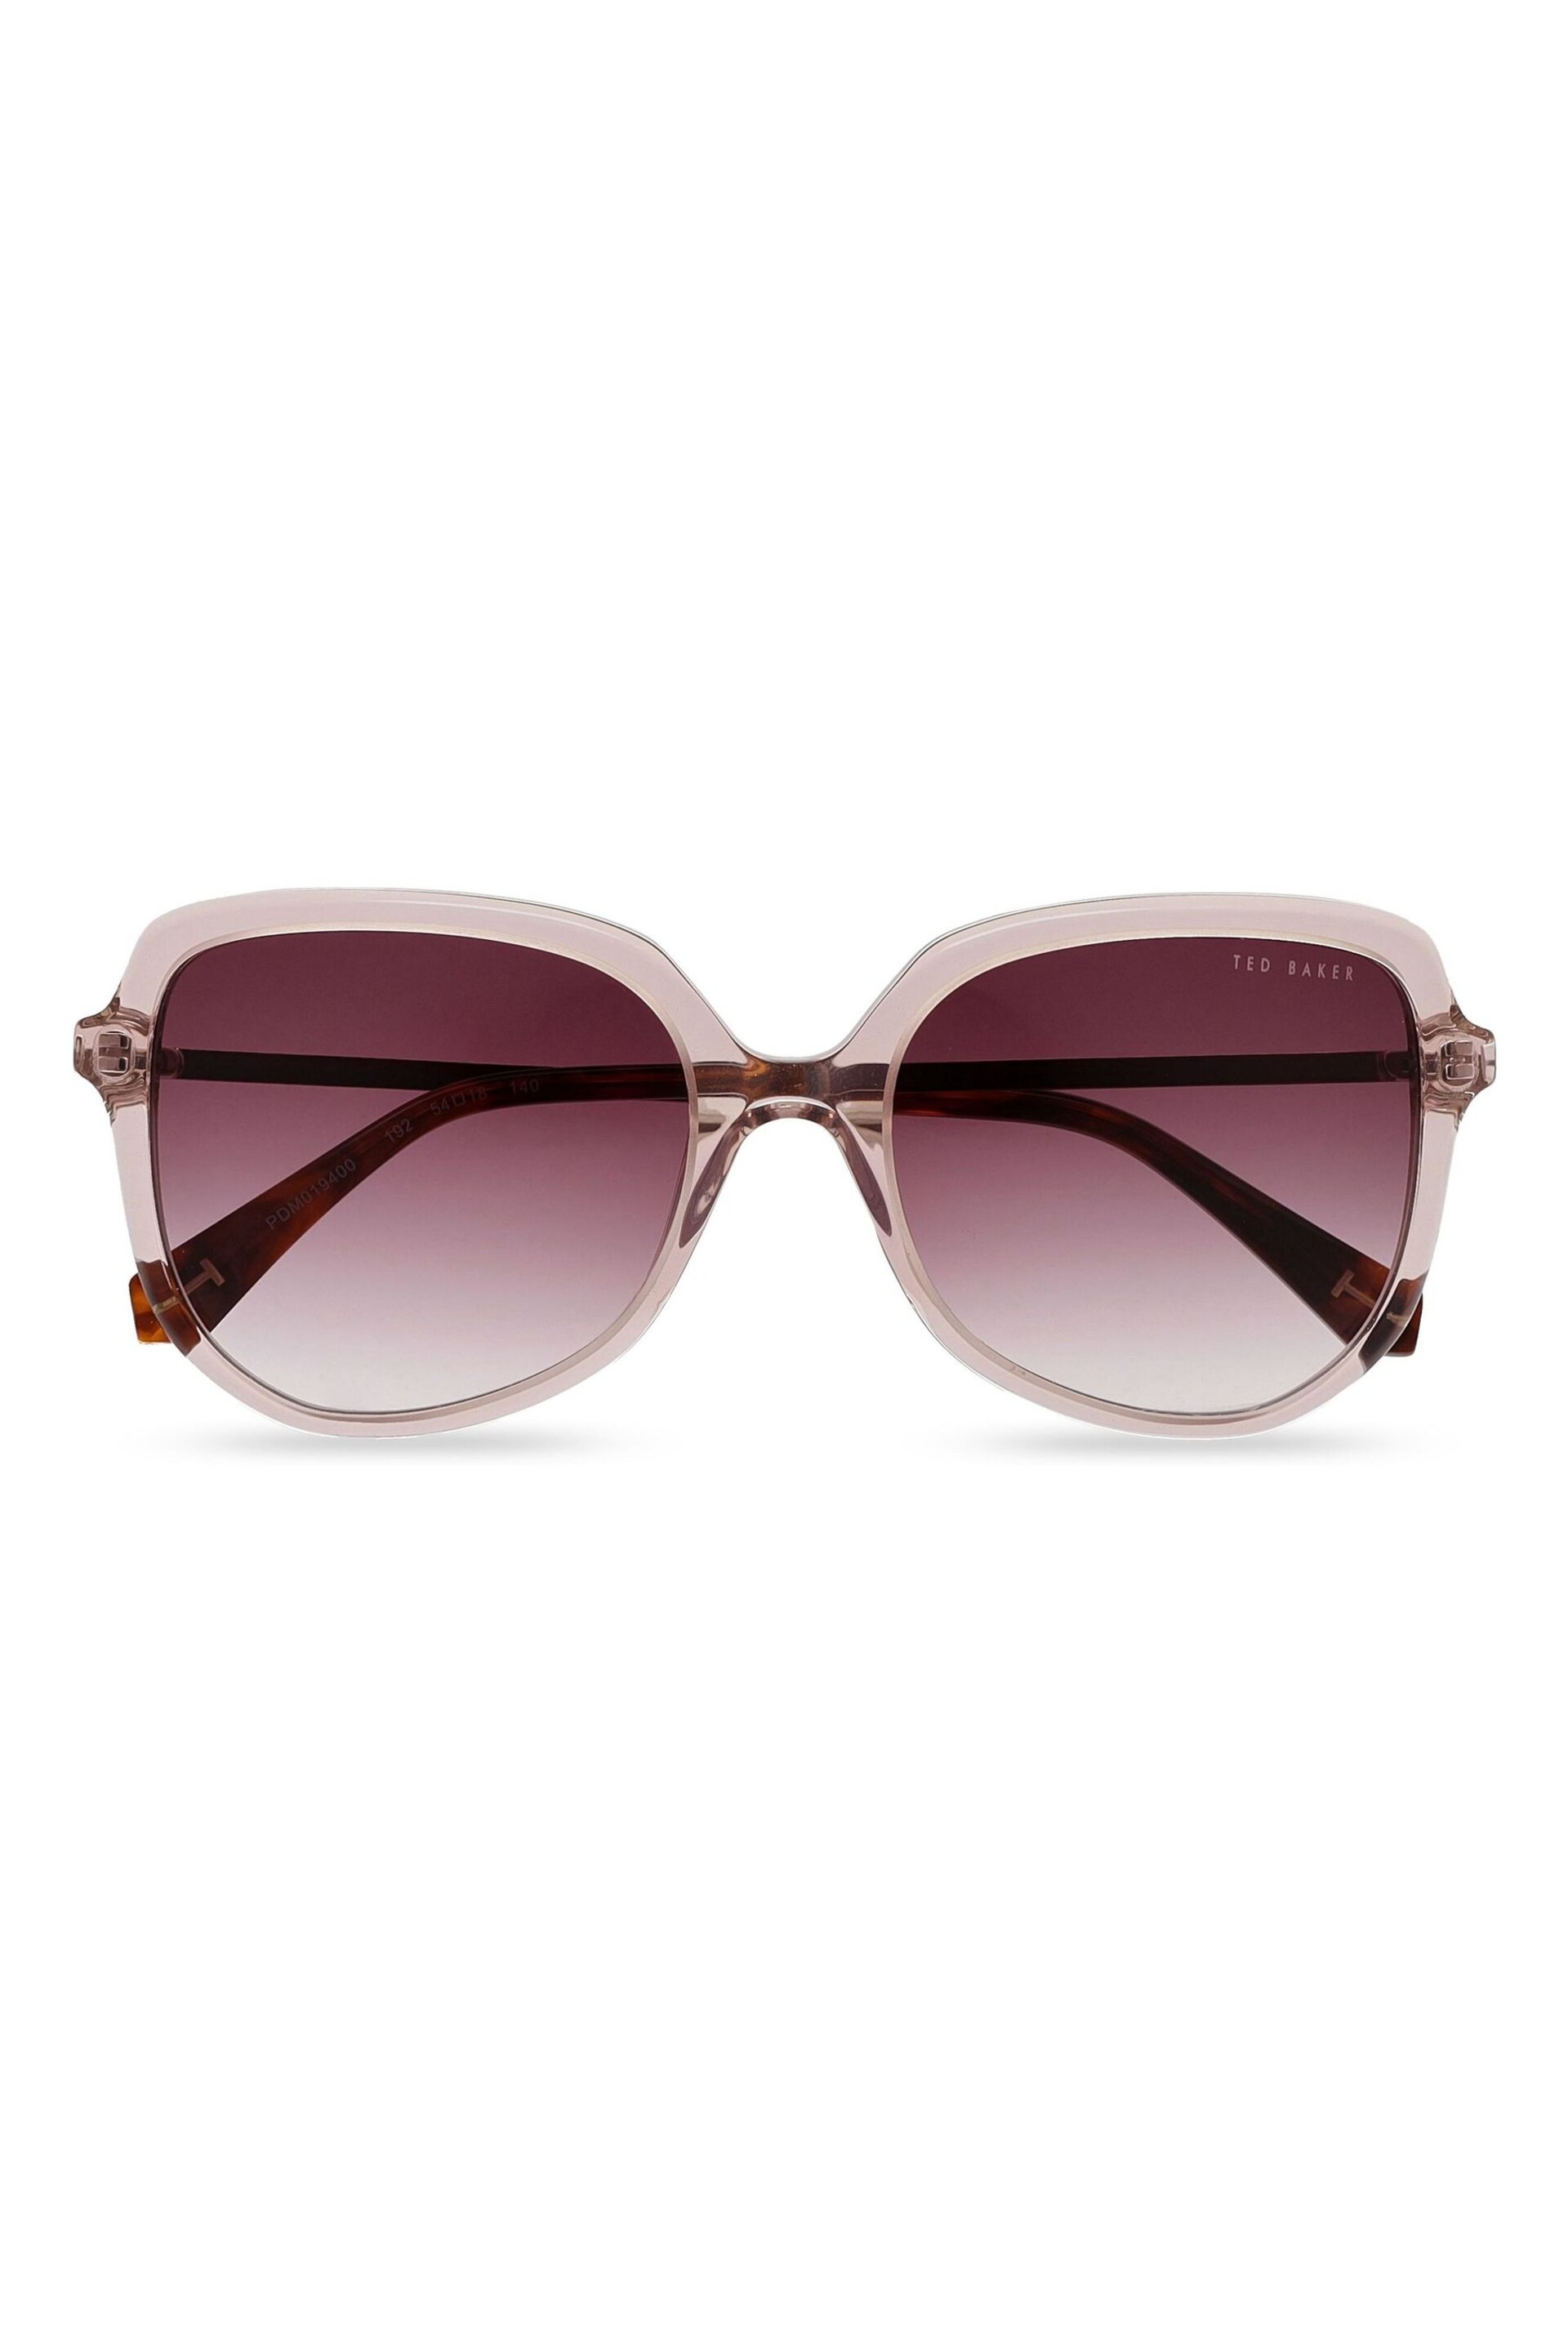 Ted Baker Purple Kiera Sunglasses - Image 2 of 5